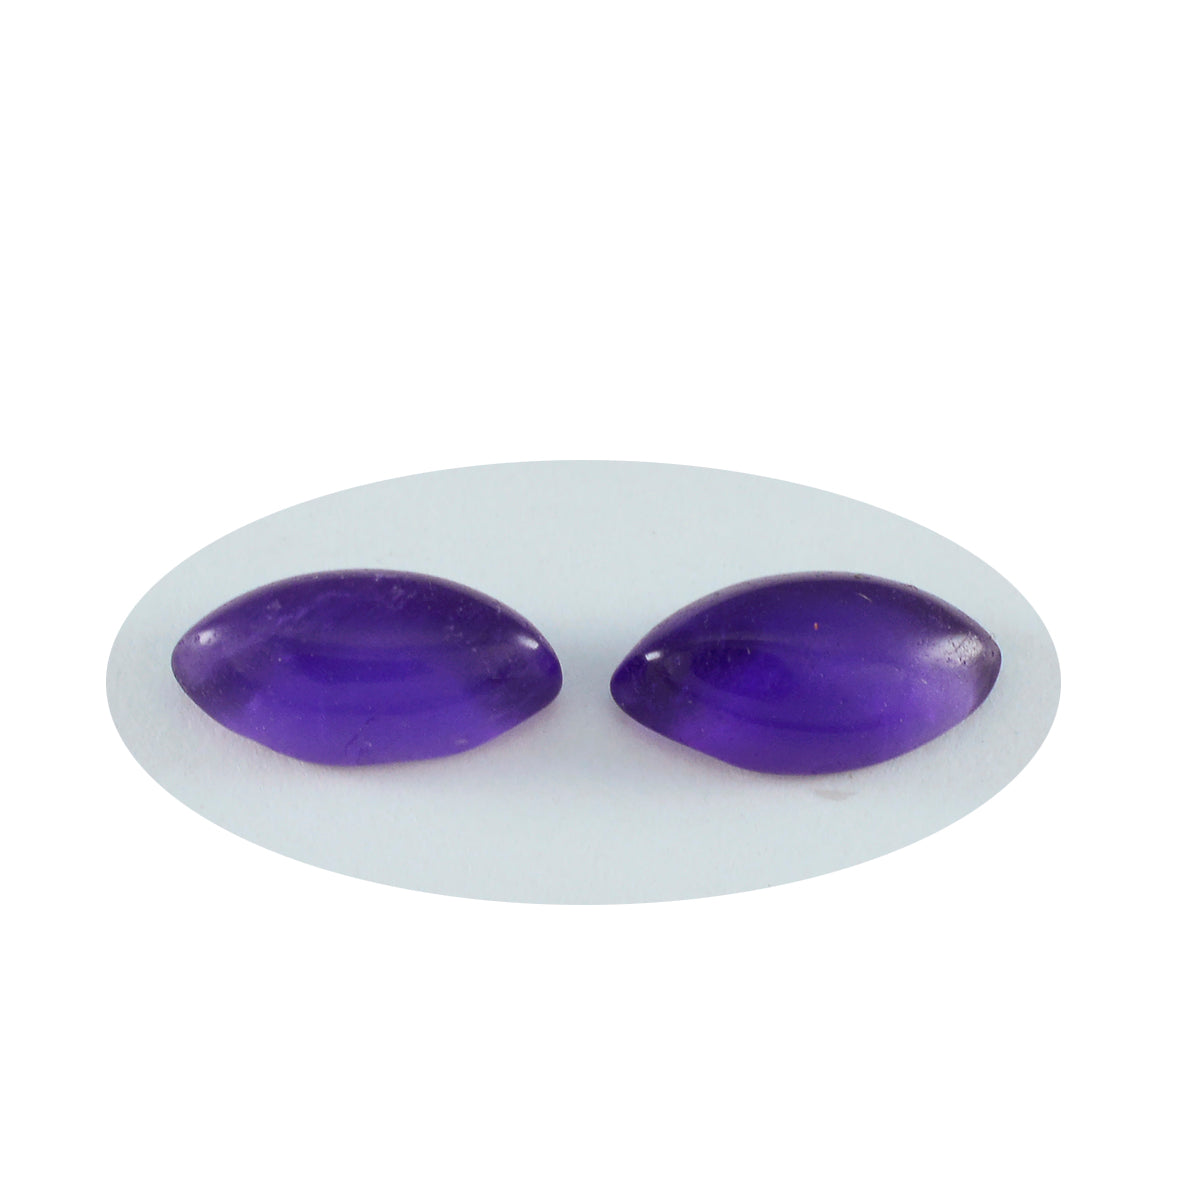 Riyogems 1 Stück violetter Amethyst-Cabochon, 5 x 10 mm, Marquise-Form, erstaunlicher Qualitätsstein